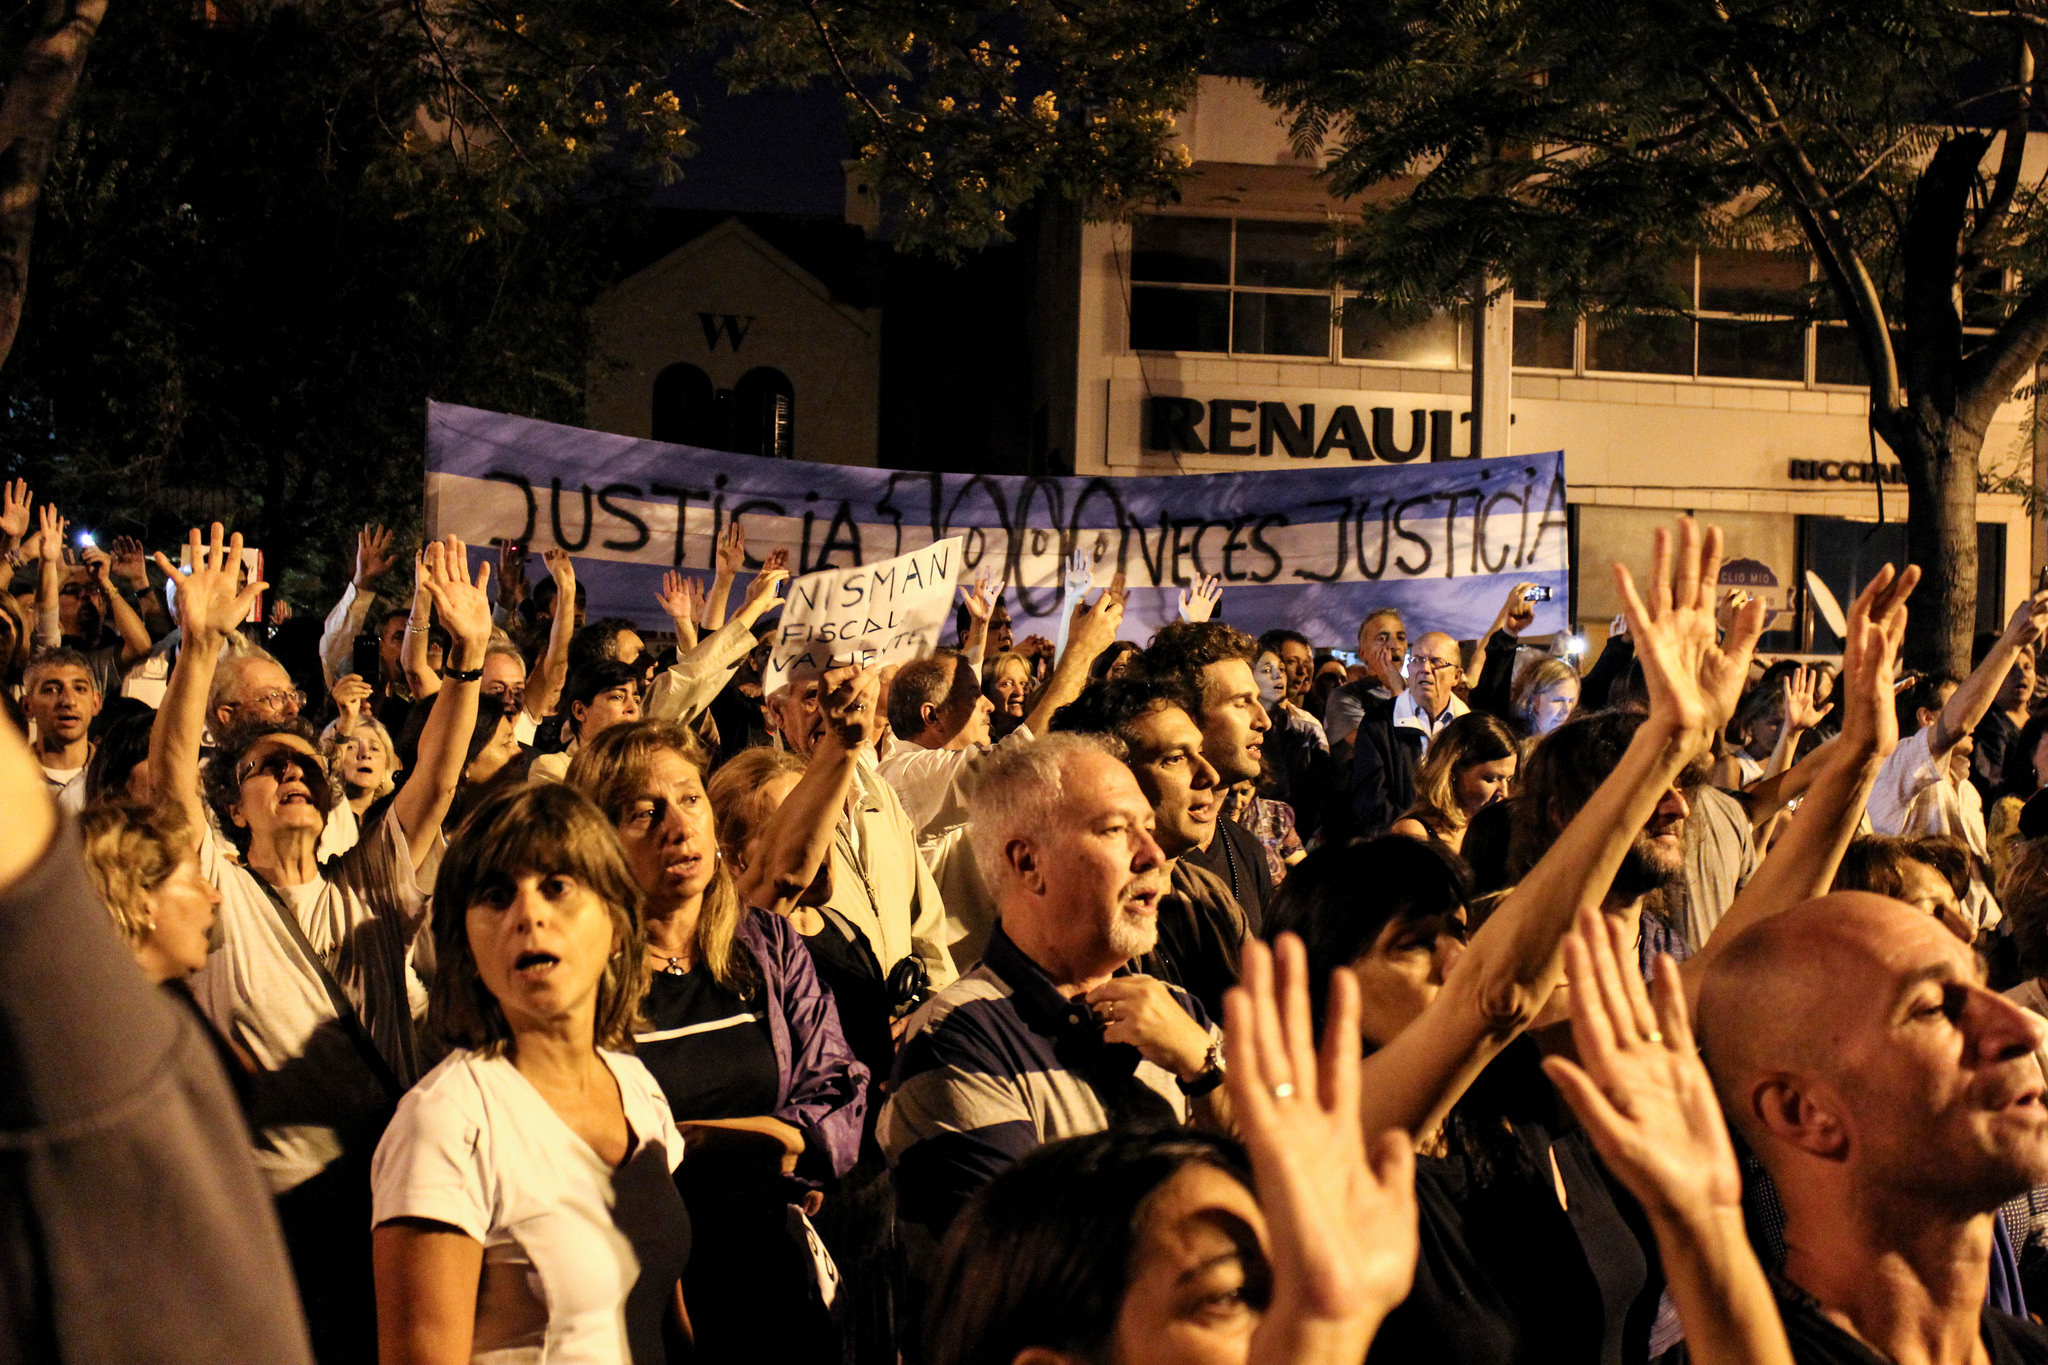 Pochod kvůli smrti žalobce Alberto Nismana. Quinta de Olivos, Buenos Aires. Fotografie pochází z účtu JMalievi na serveru Flickr, uveřejněna v rámci licence Creative Commons.